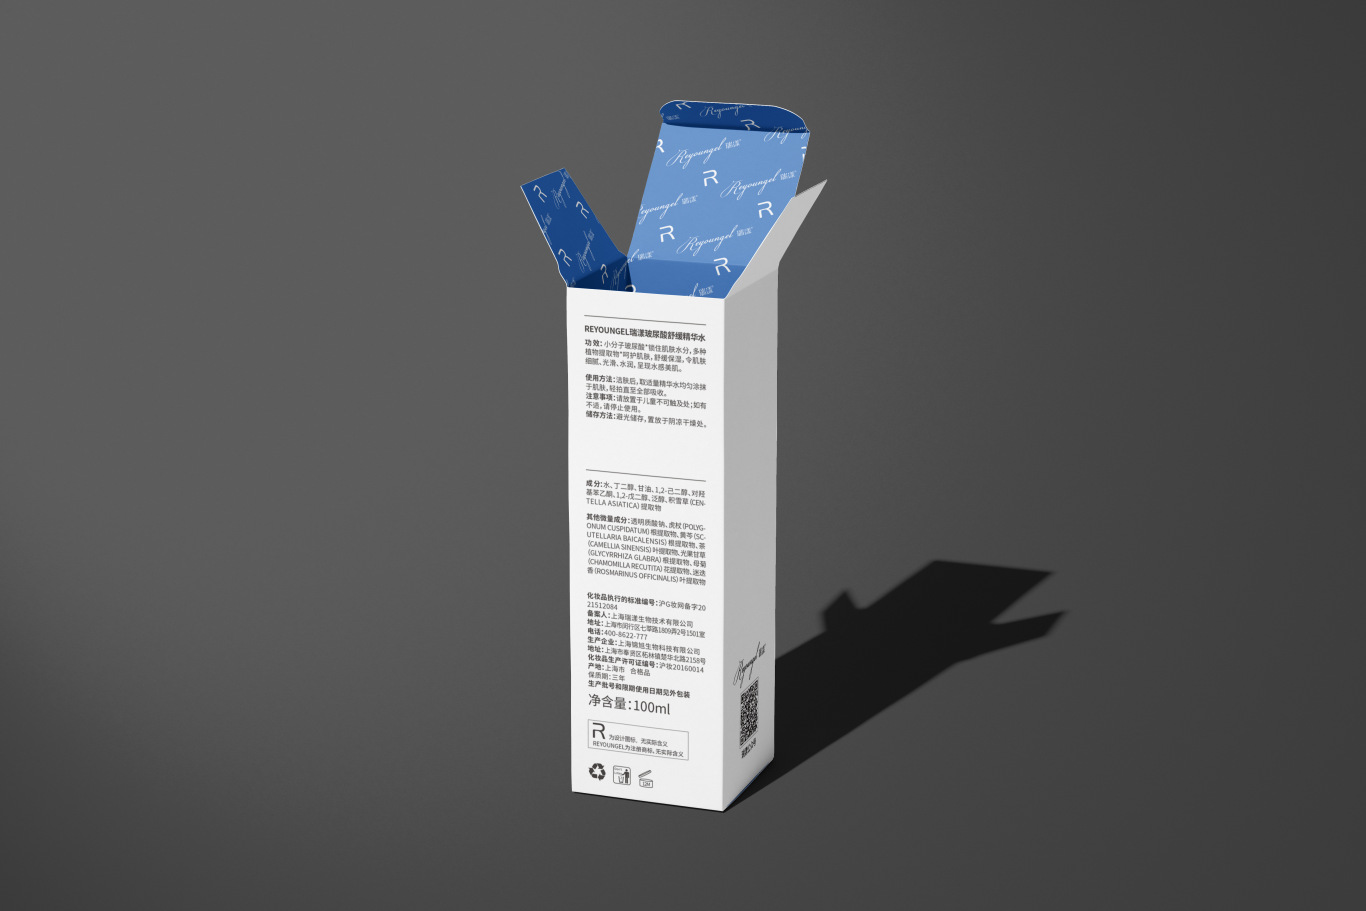 瑞漾玻尿酸精华水的包装设计项目图14